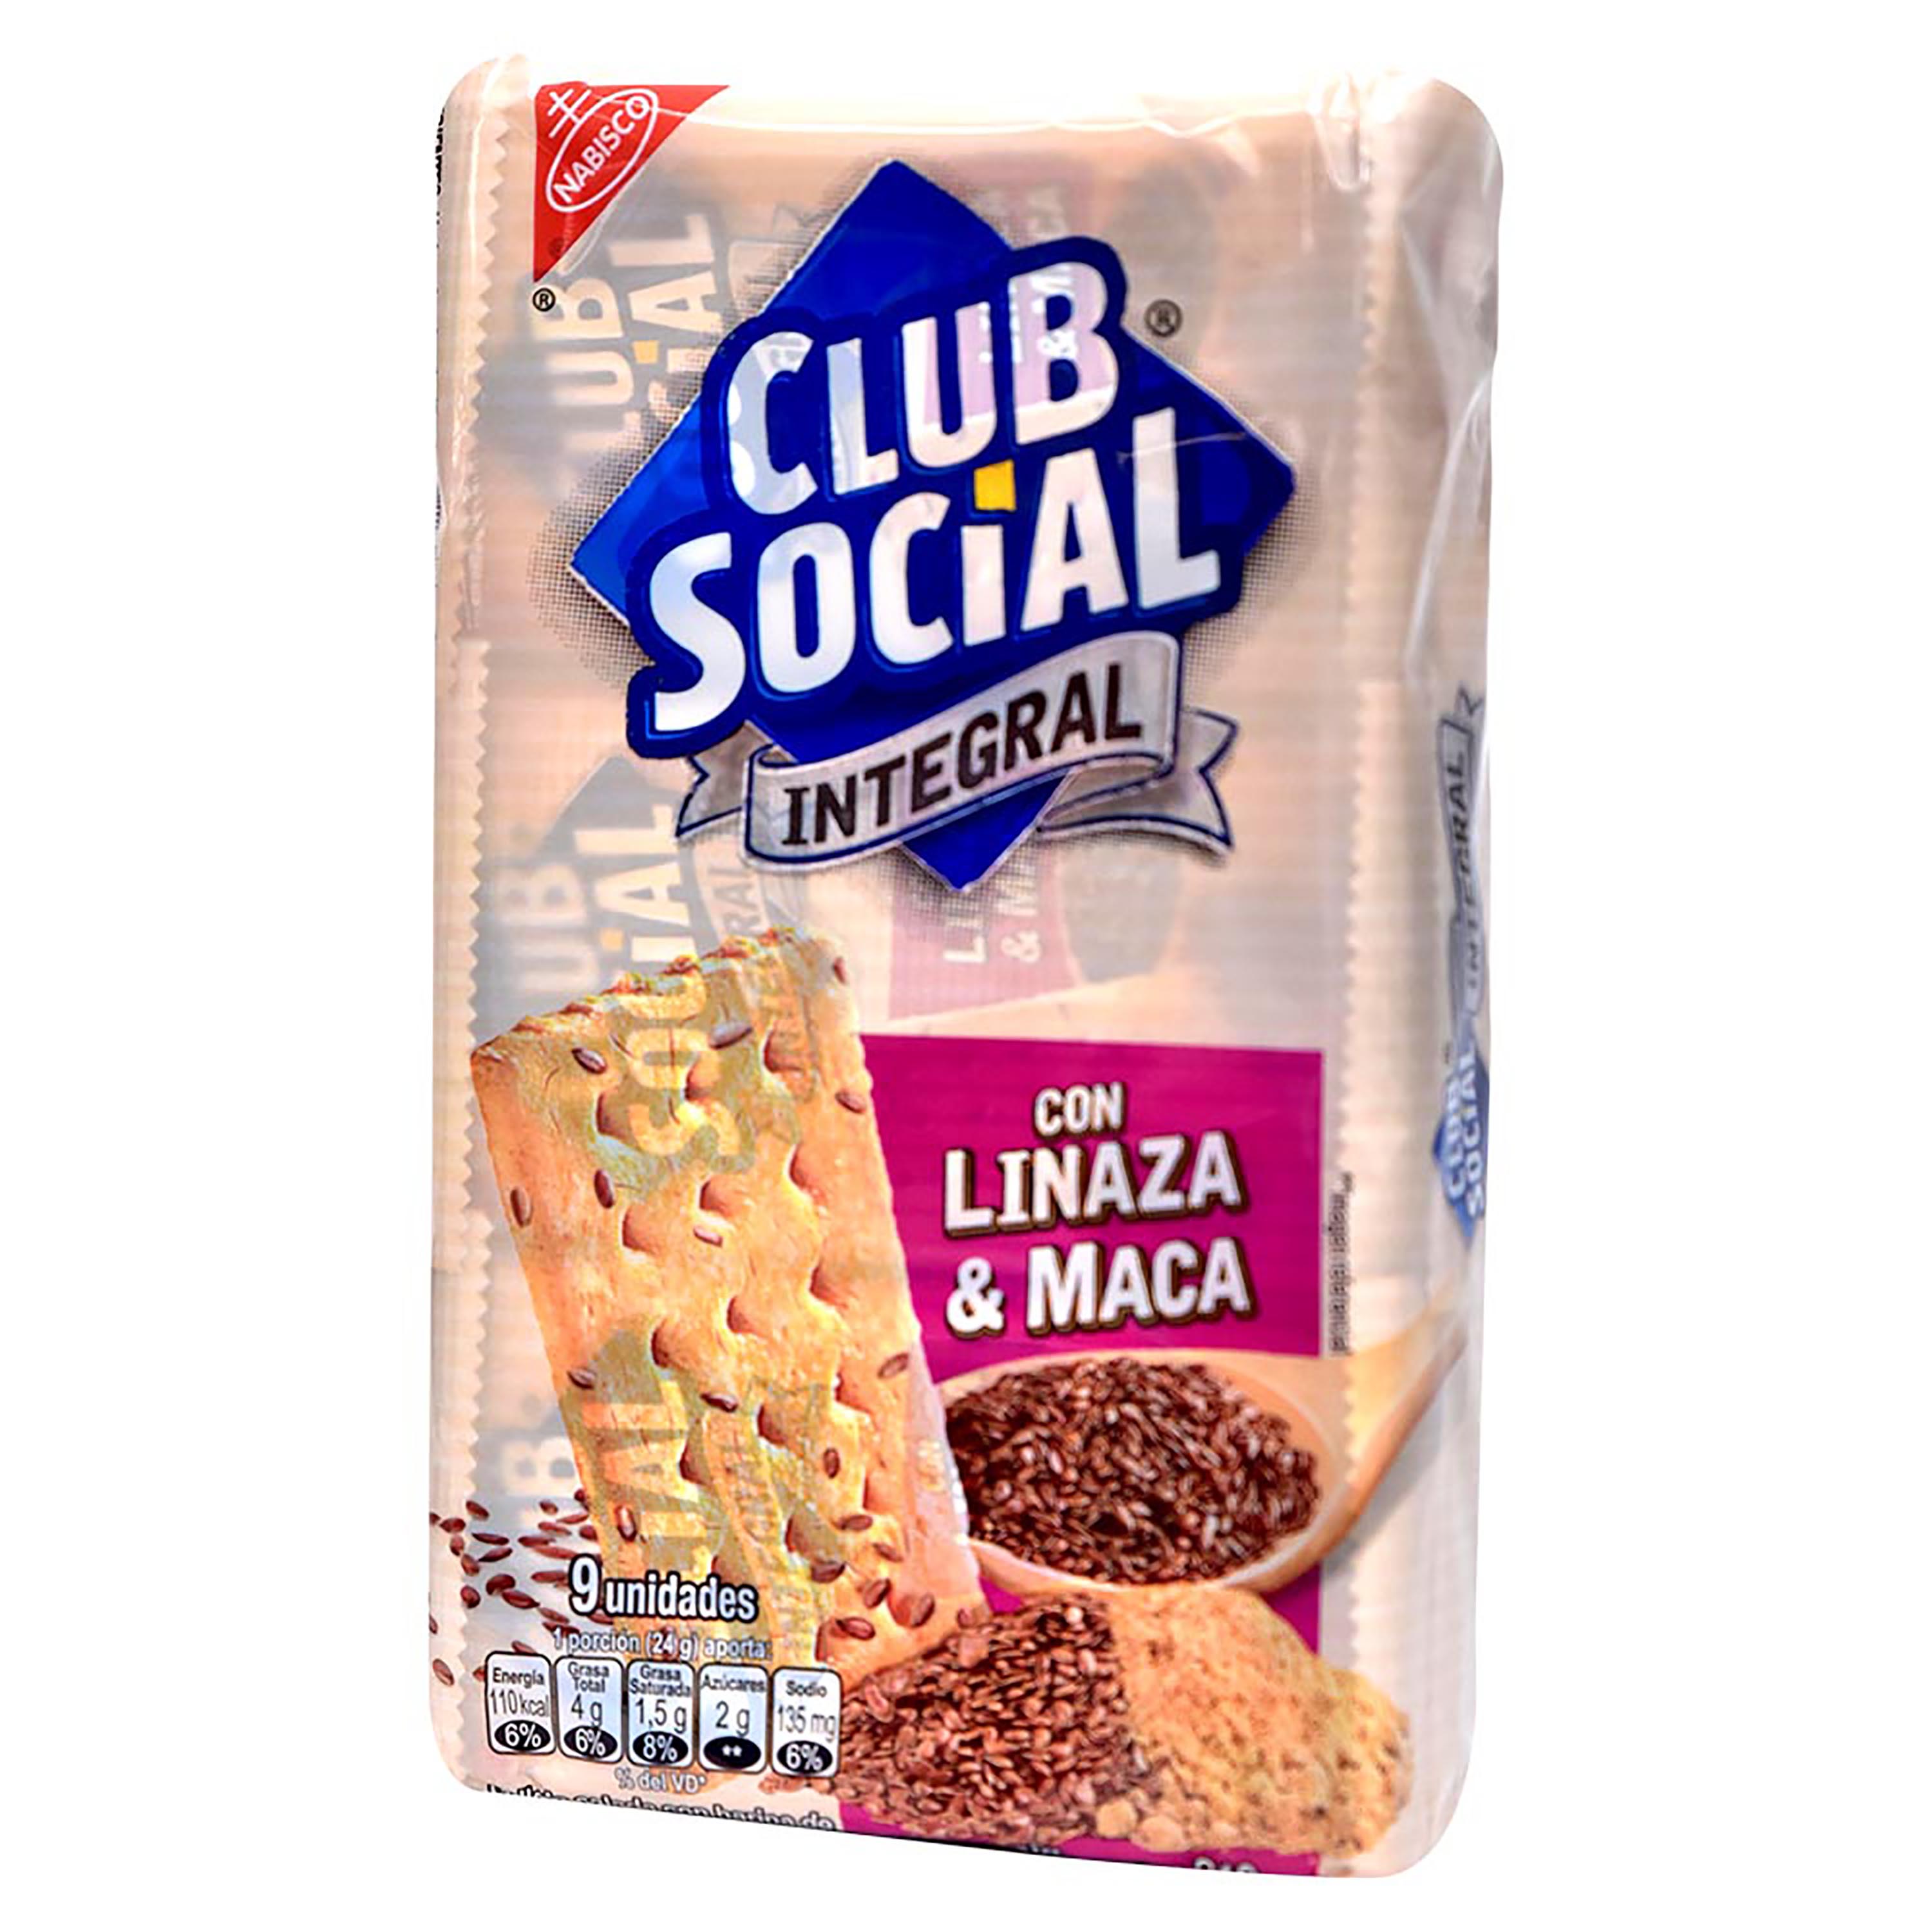 Comprar Nabisco Club Social Integr Linaza Y Maca | Walmart El Salvador